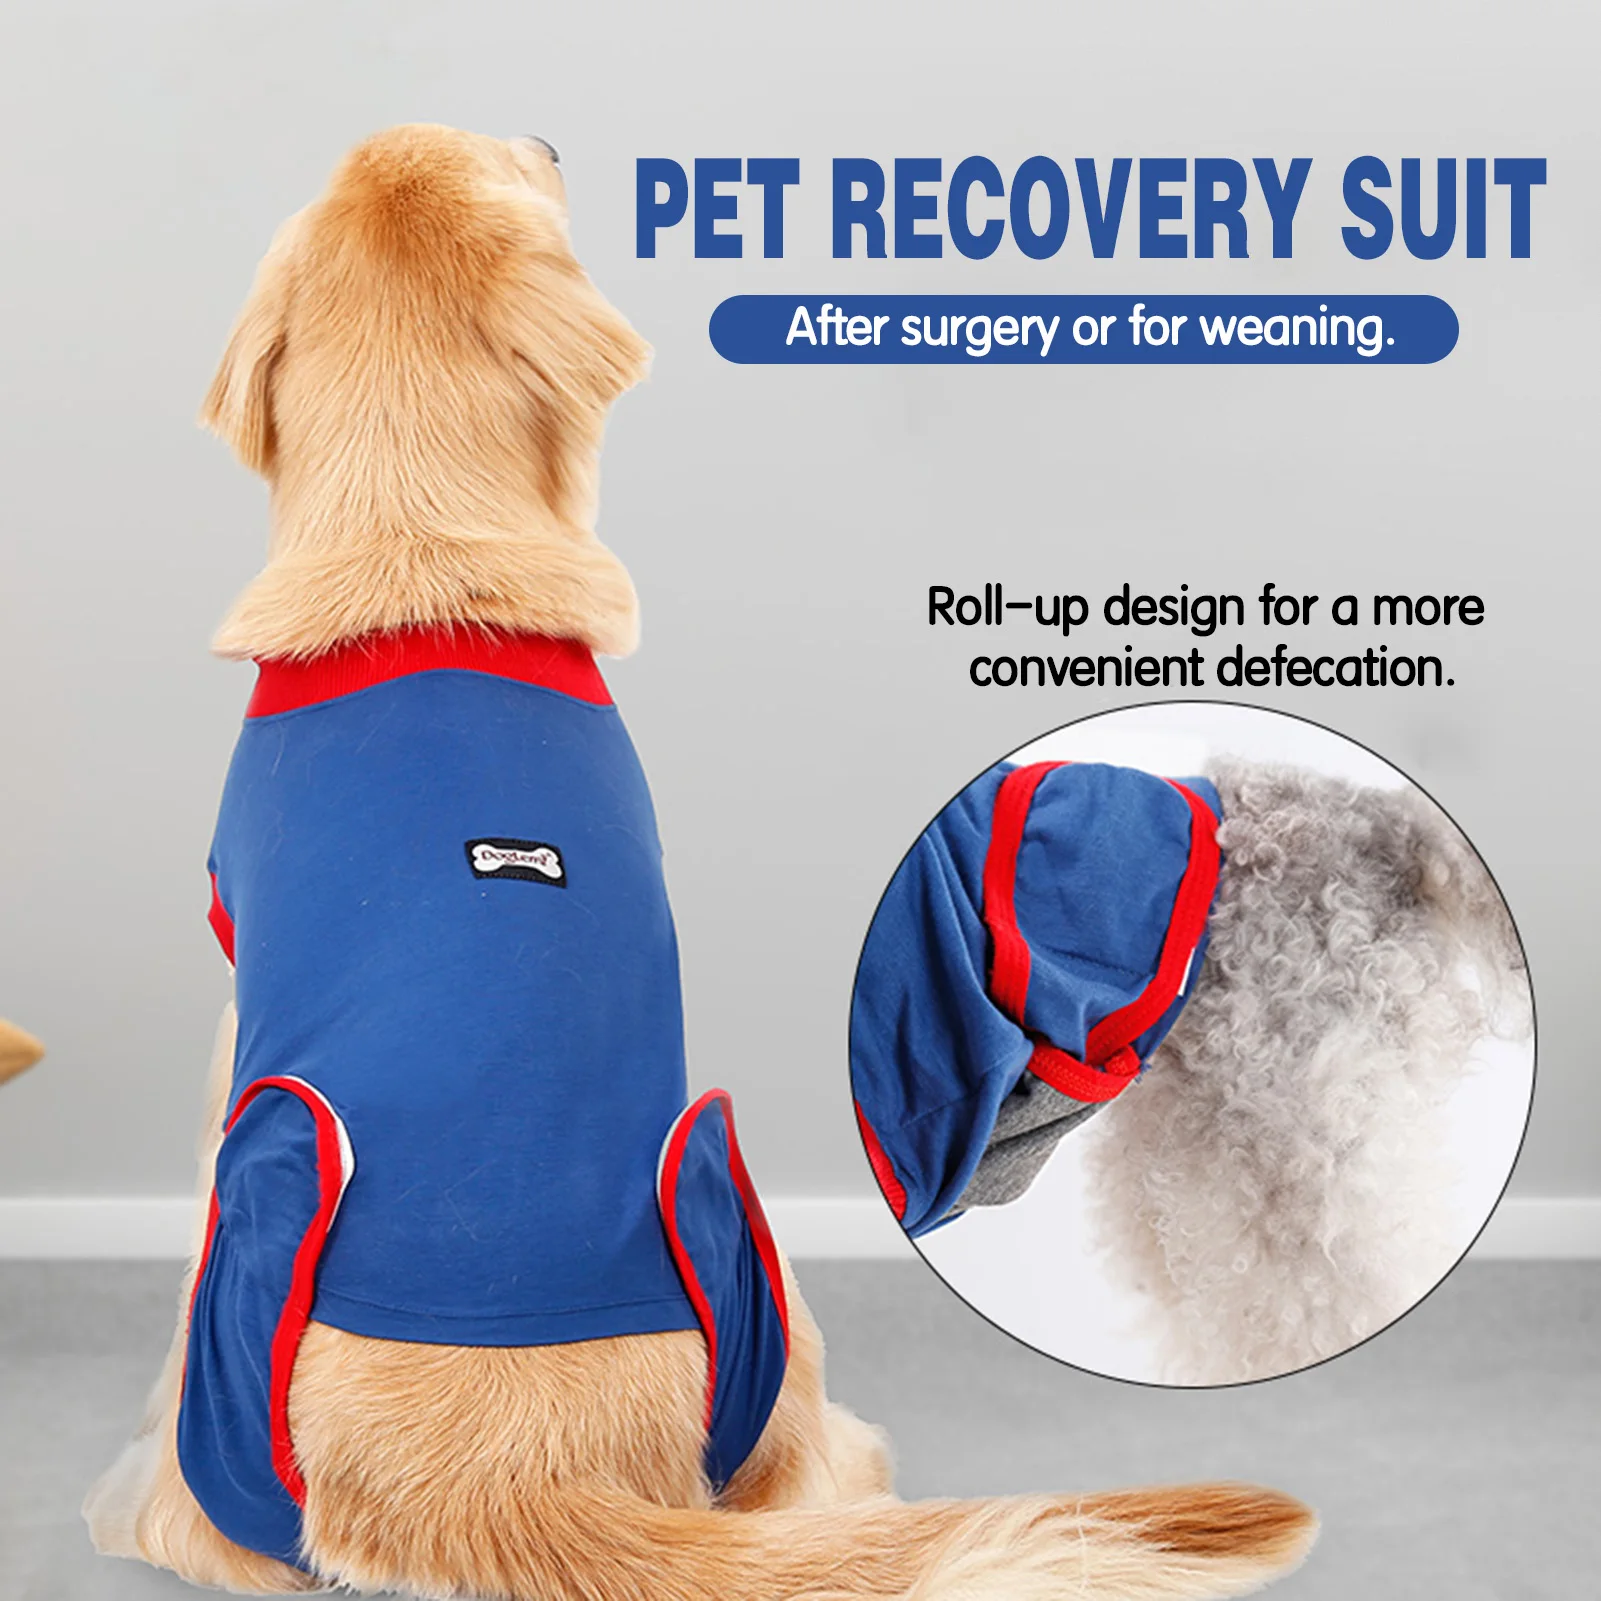 

Костюм для выздоровления собак после операции, нижняя одежда для живота, послеоперационный жилет для домашних животных, собак и щенков